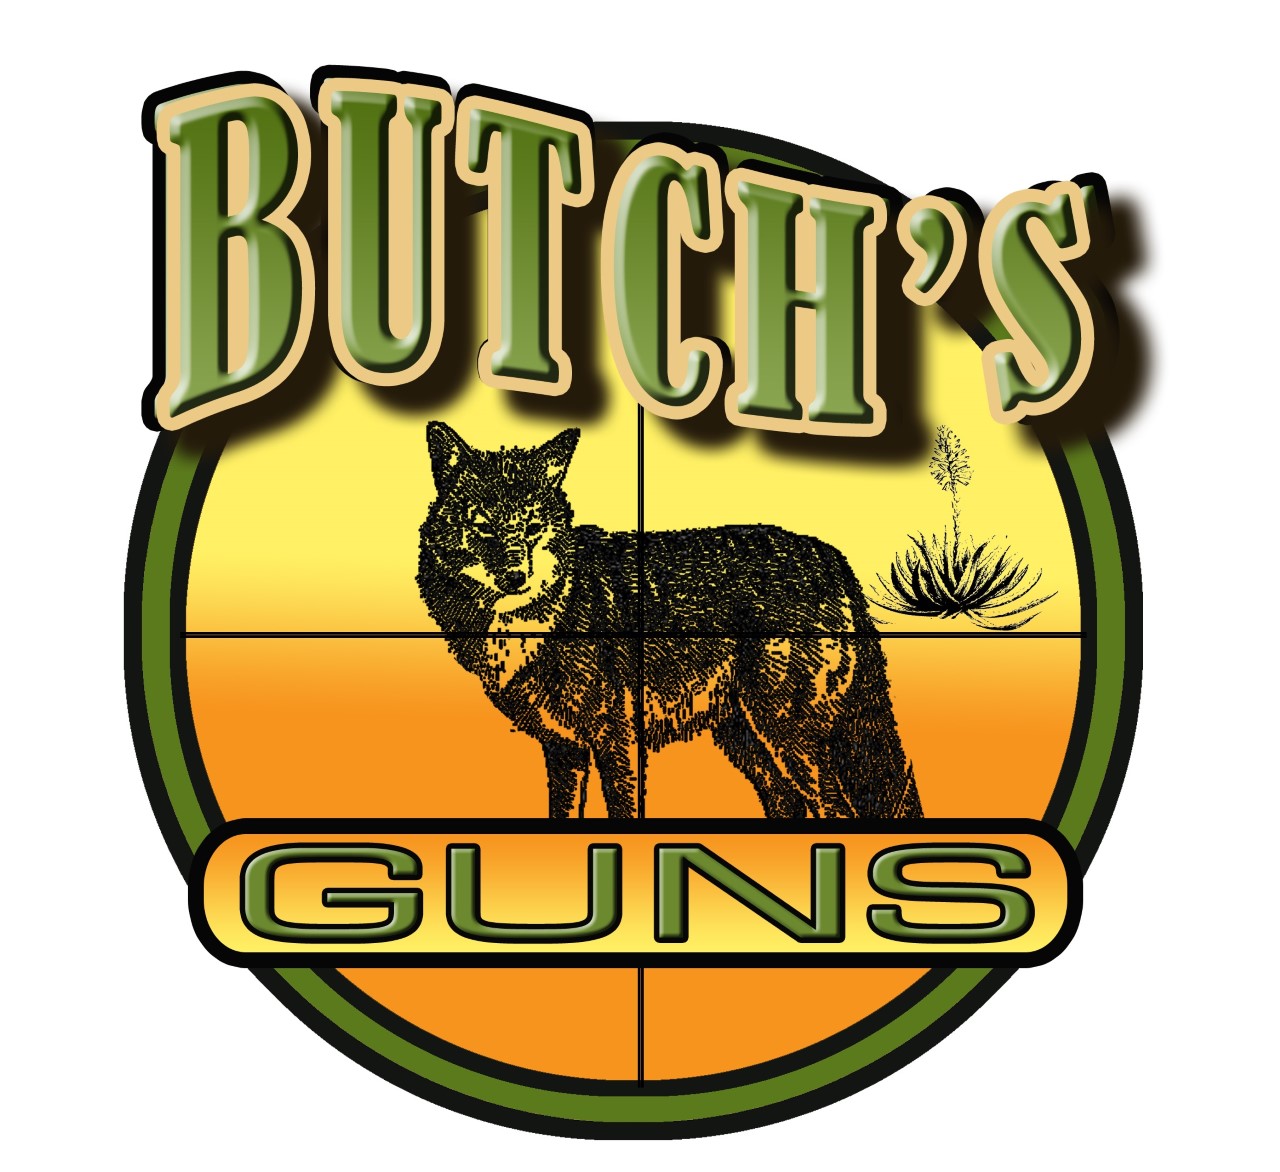 Butchs Guns